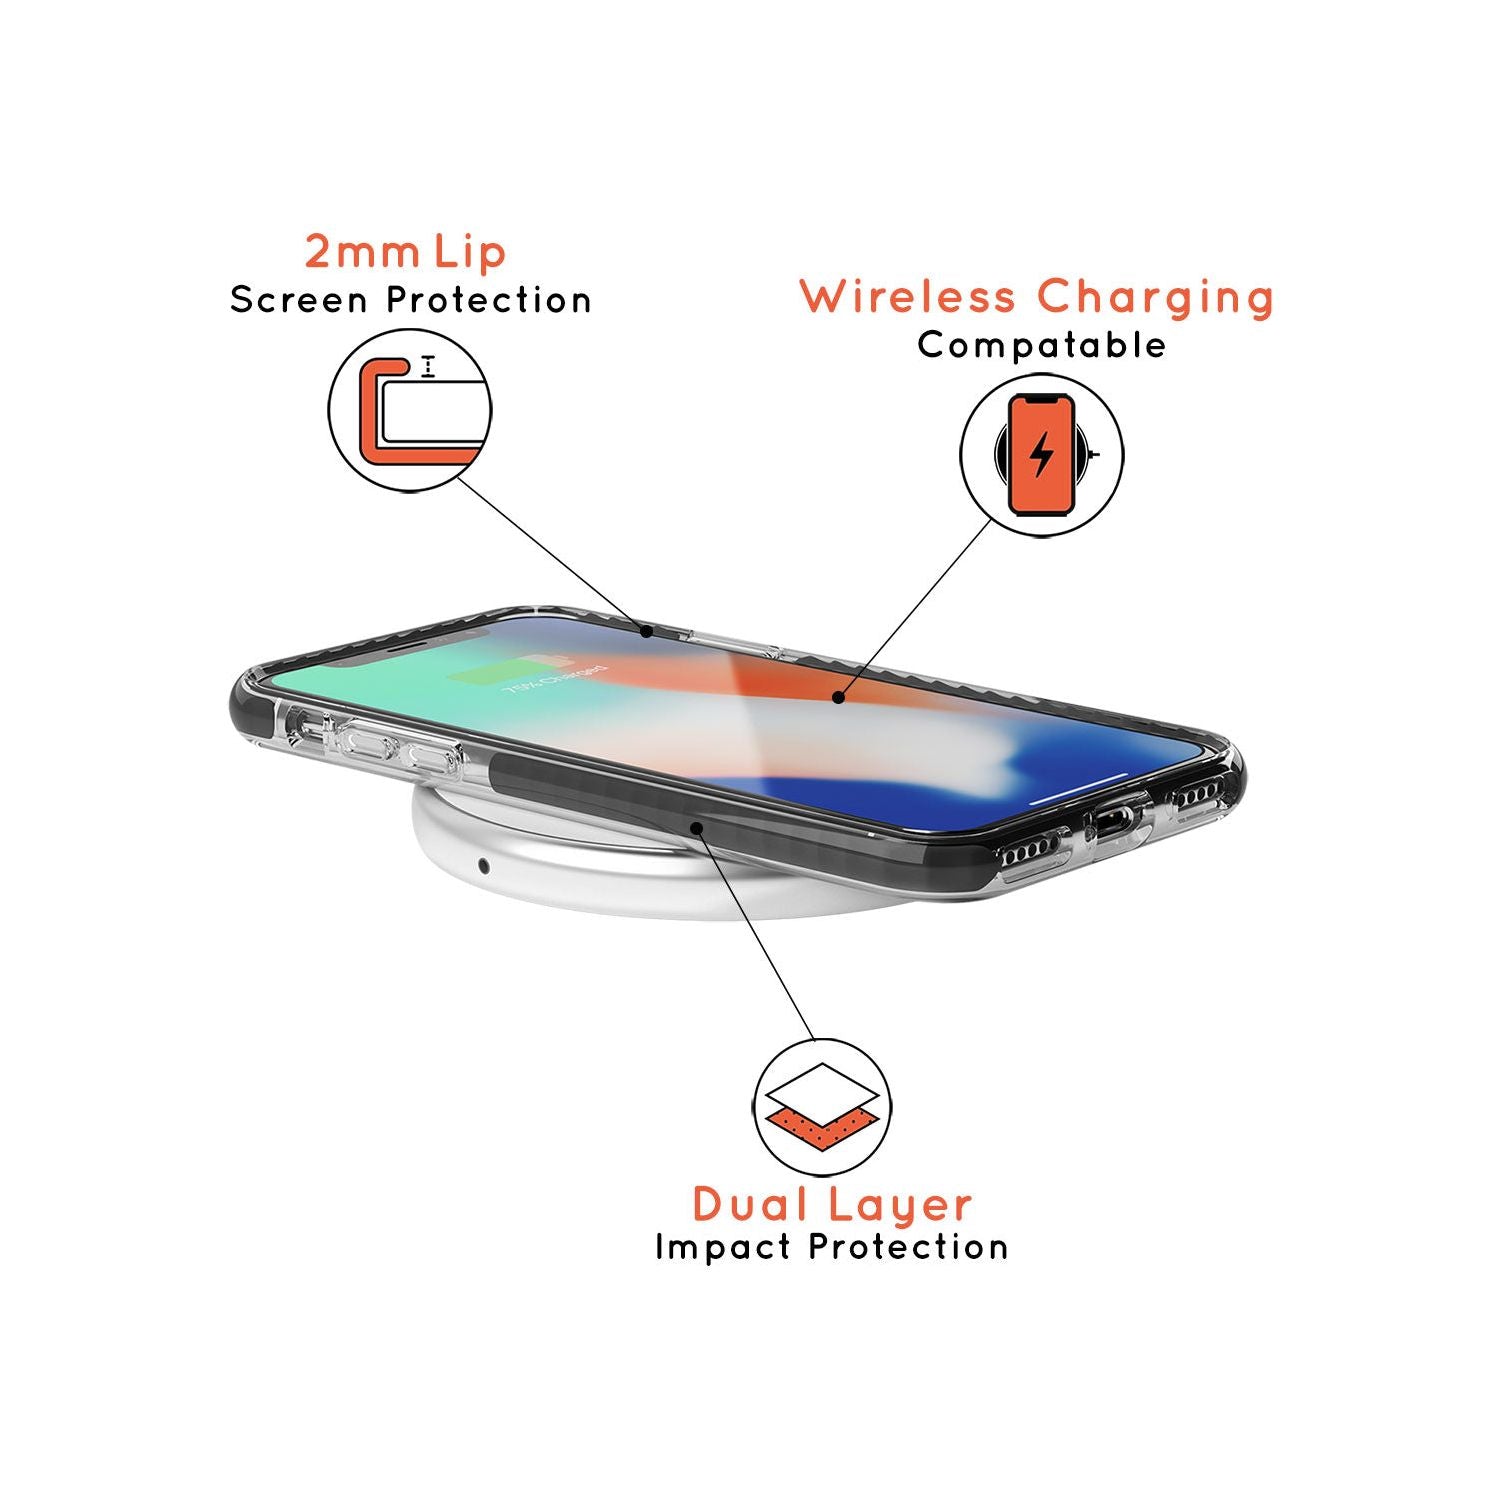 Aquarius Emblem - Transparent Design Black Impact Phone Case for iPhone X XS Max XR